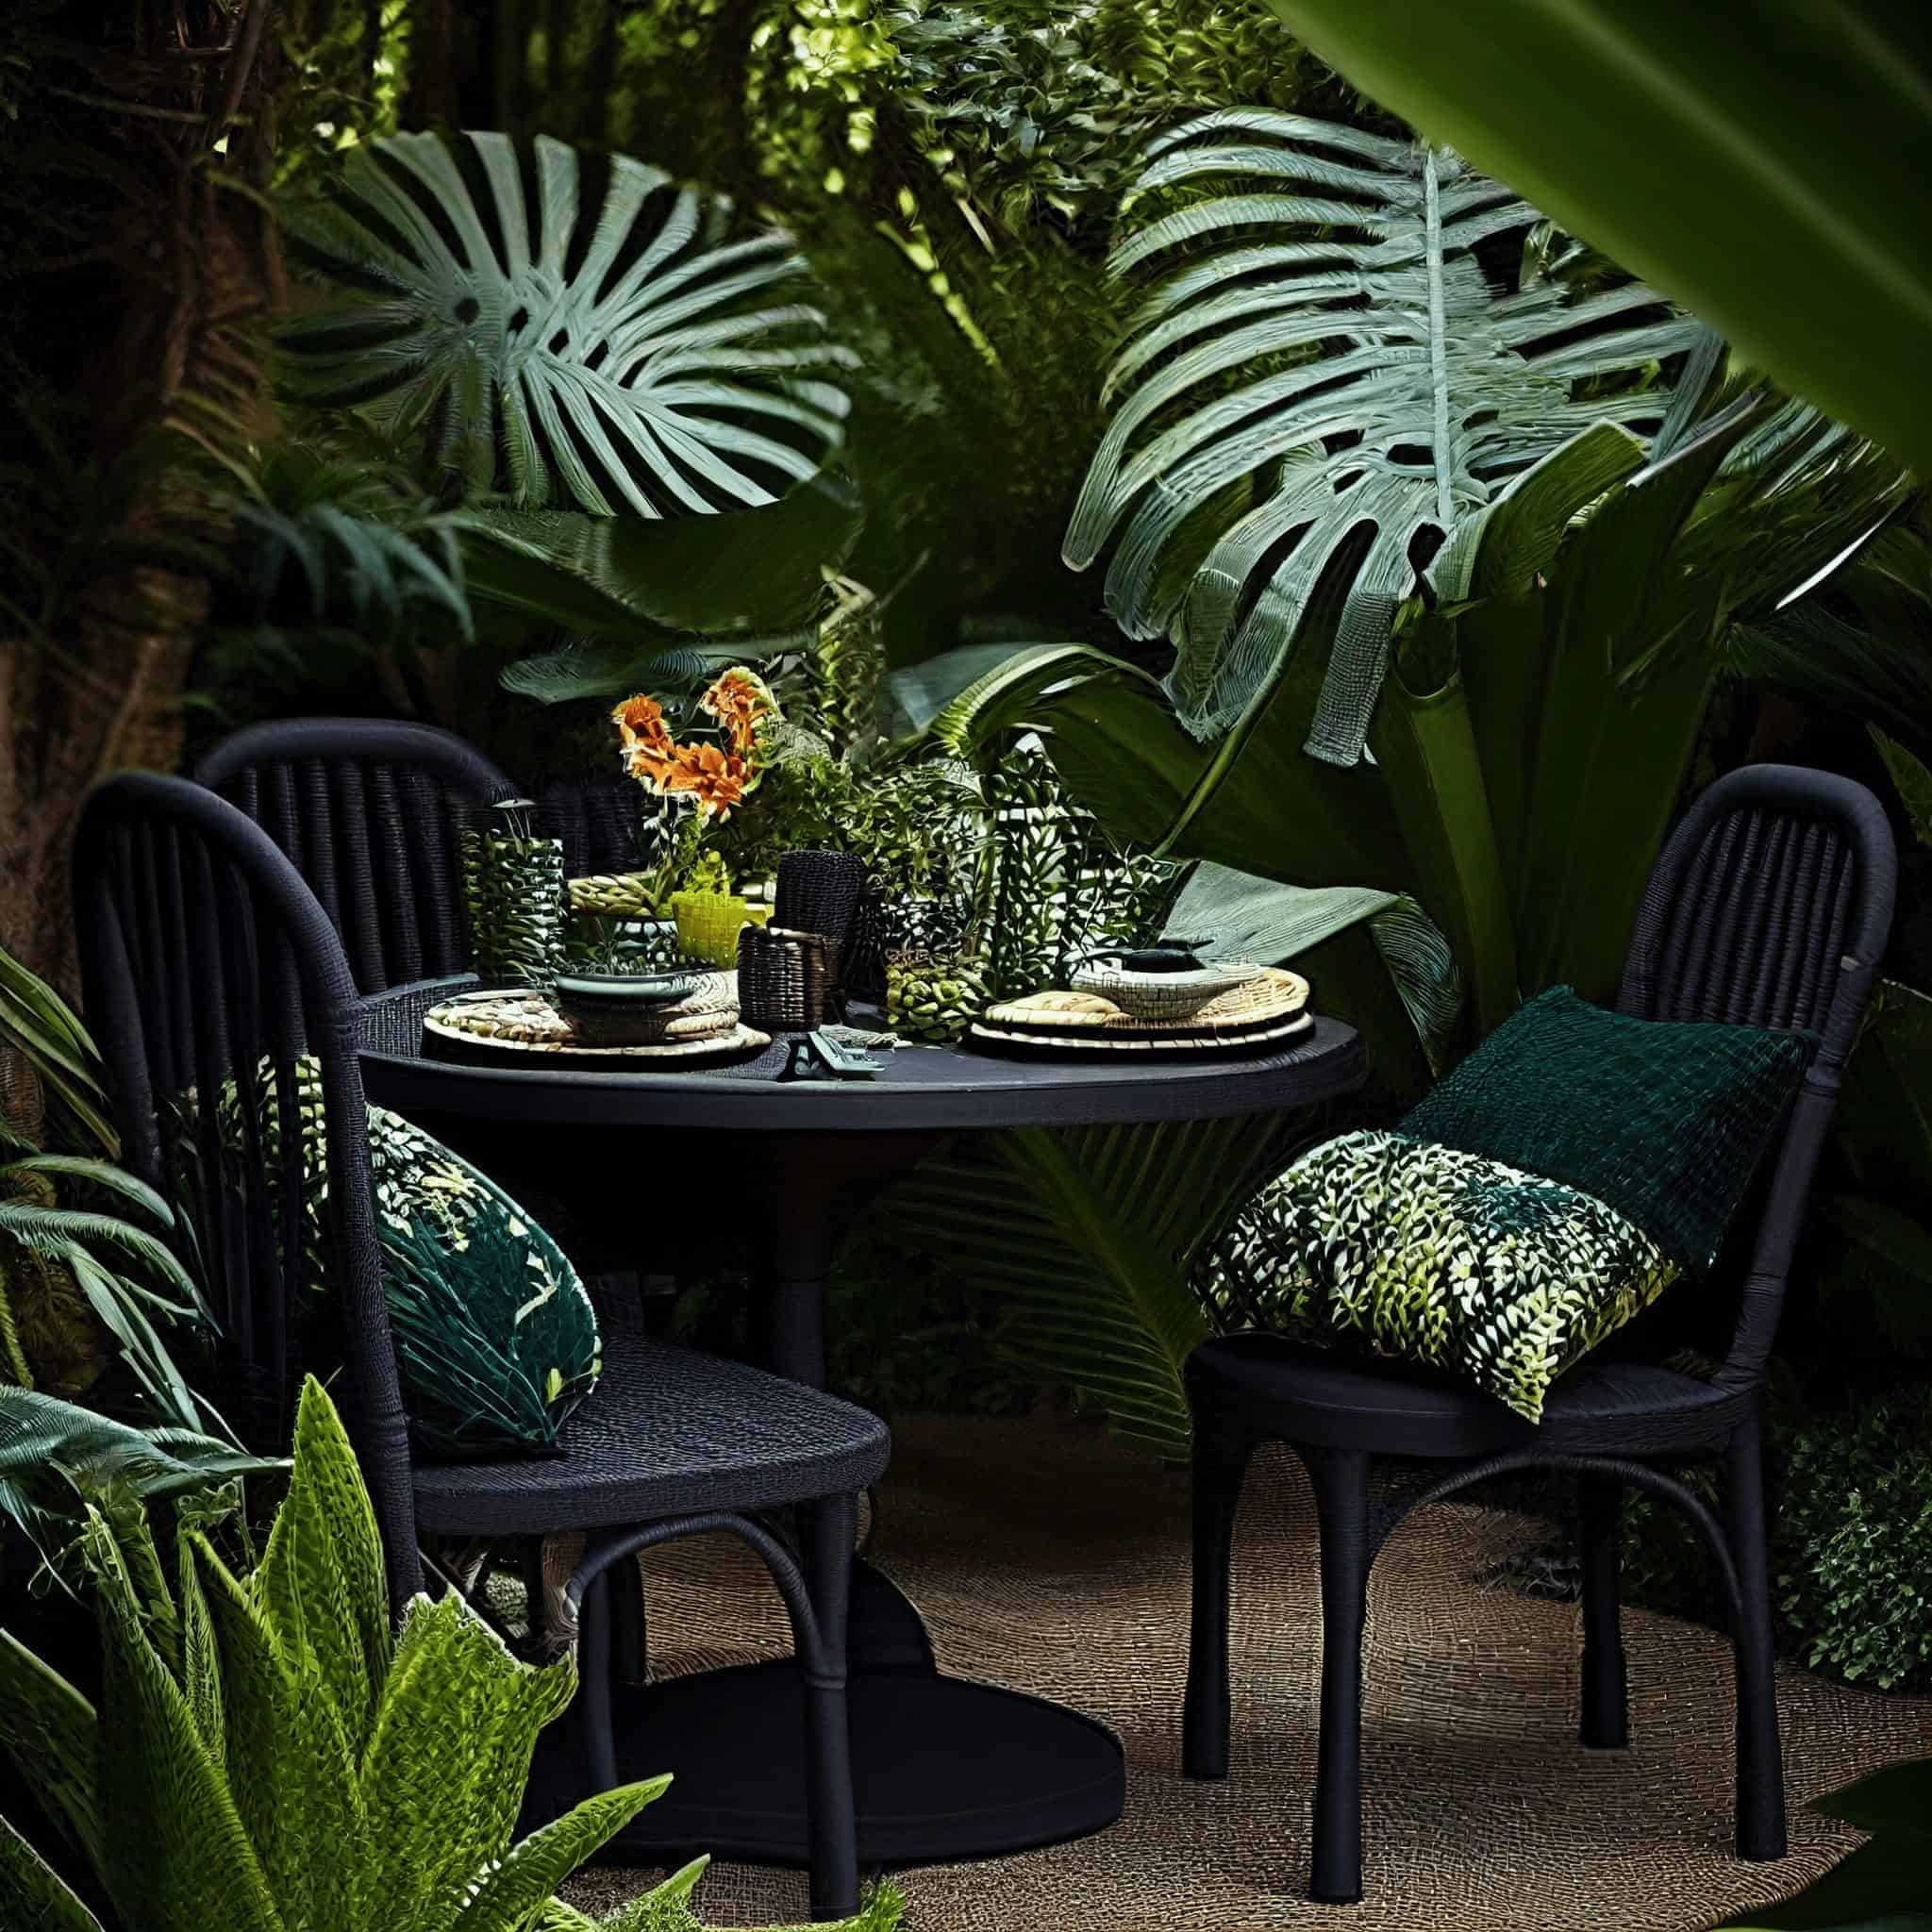 Tropical garden styles Image 2